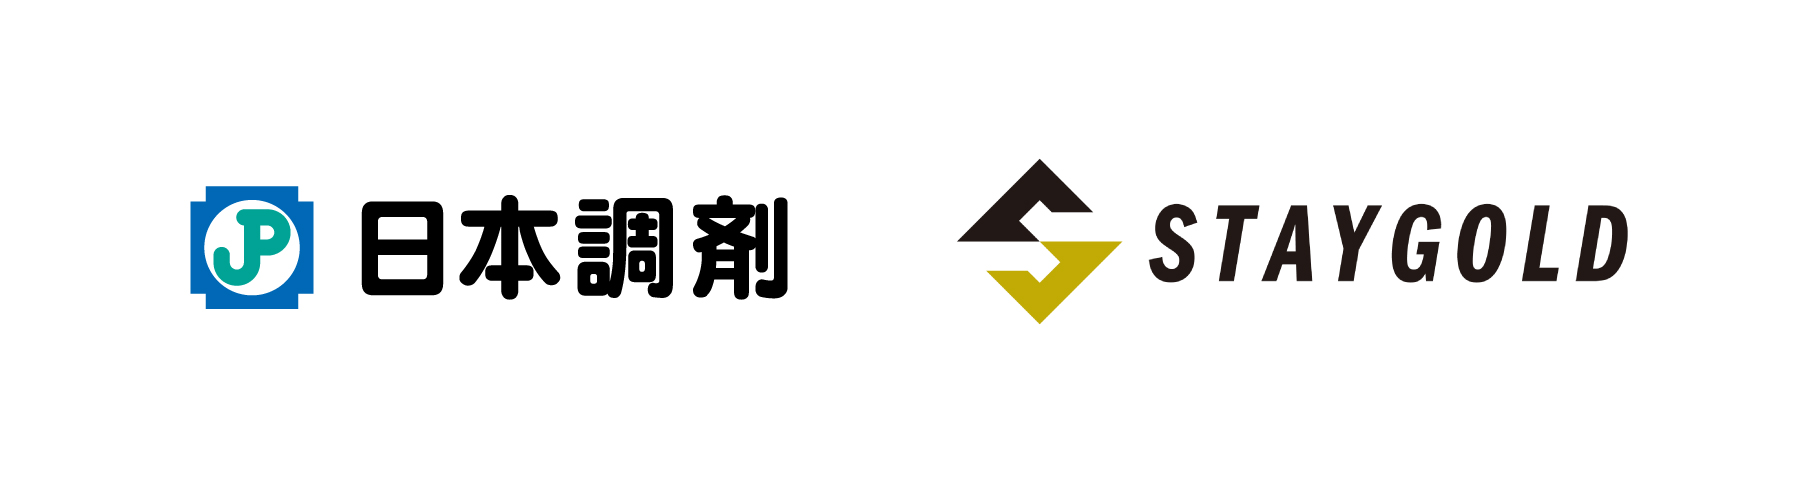 日本調剤のロゴとSTAYGOLDのロゴ